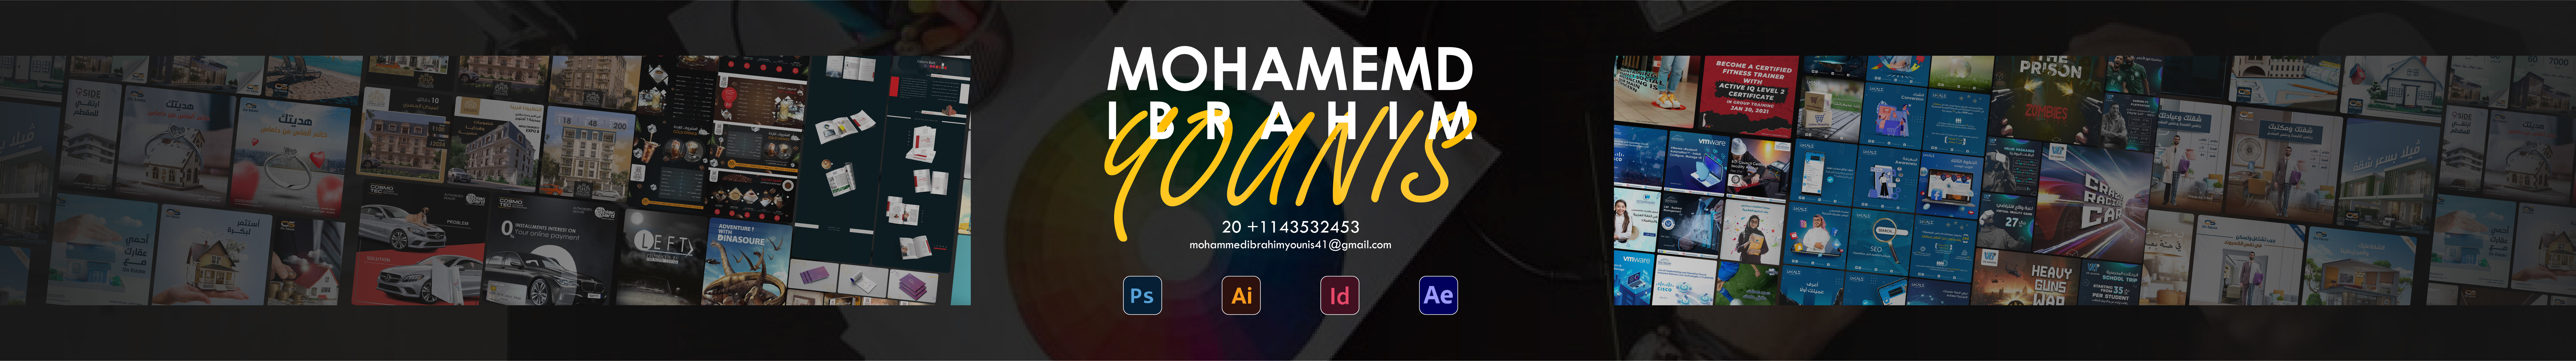 Mohammed Ibrahim のプロファイルバナー